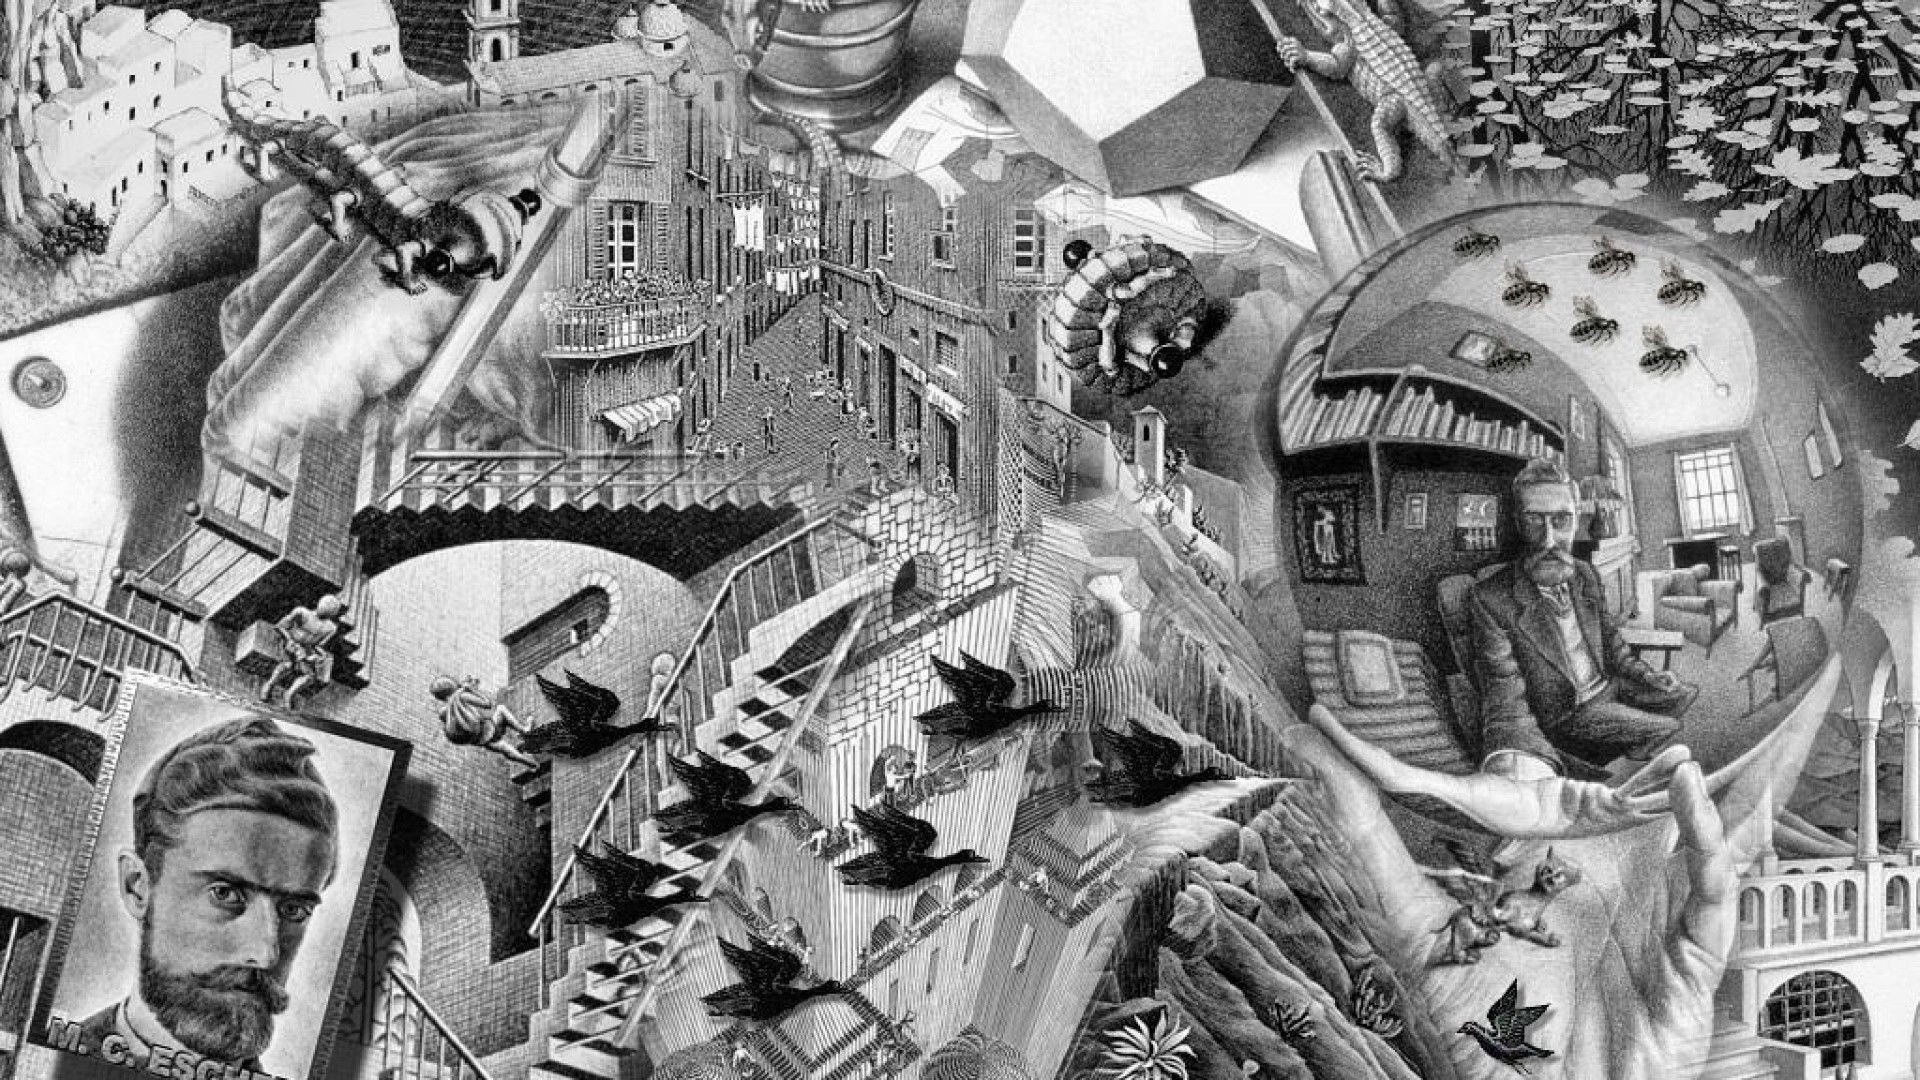 M.C. Escher, Other artist, Escher wallpapers, Graphic art, 1920x1080 Full HD Desktop